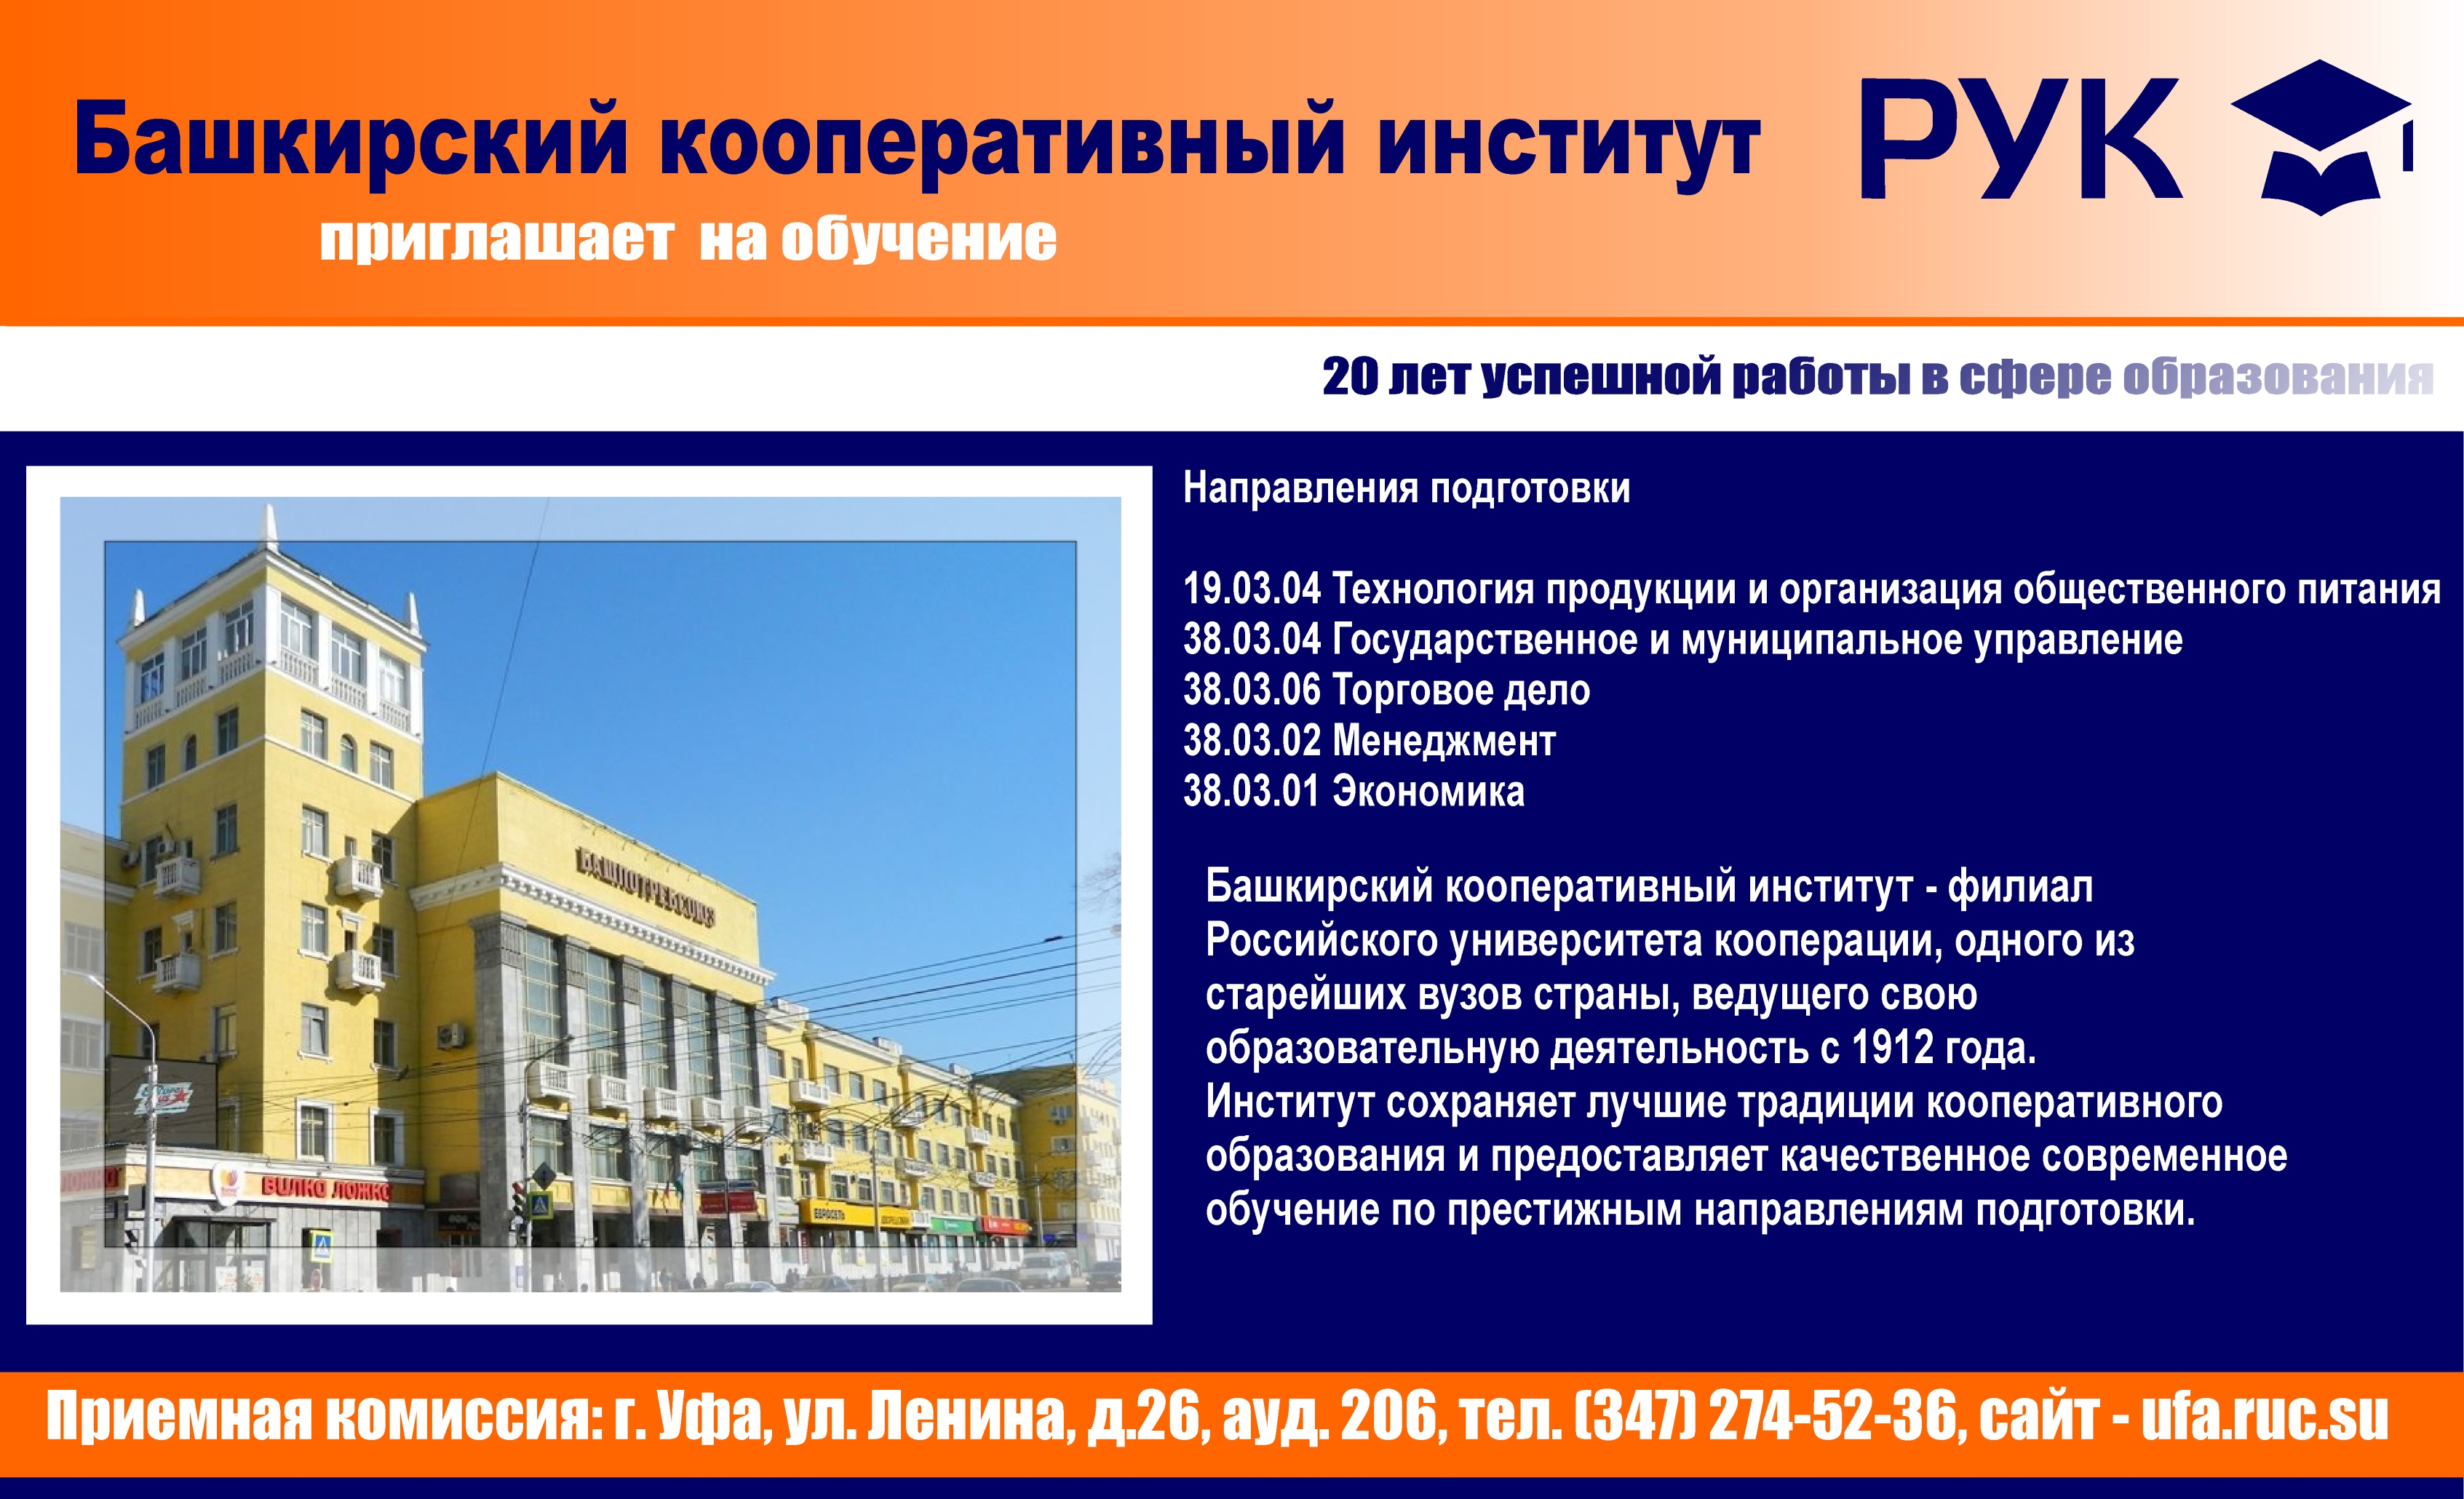 Филиал РУК- Башкирский кооперативный институт